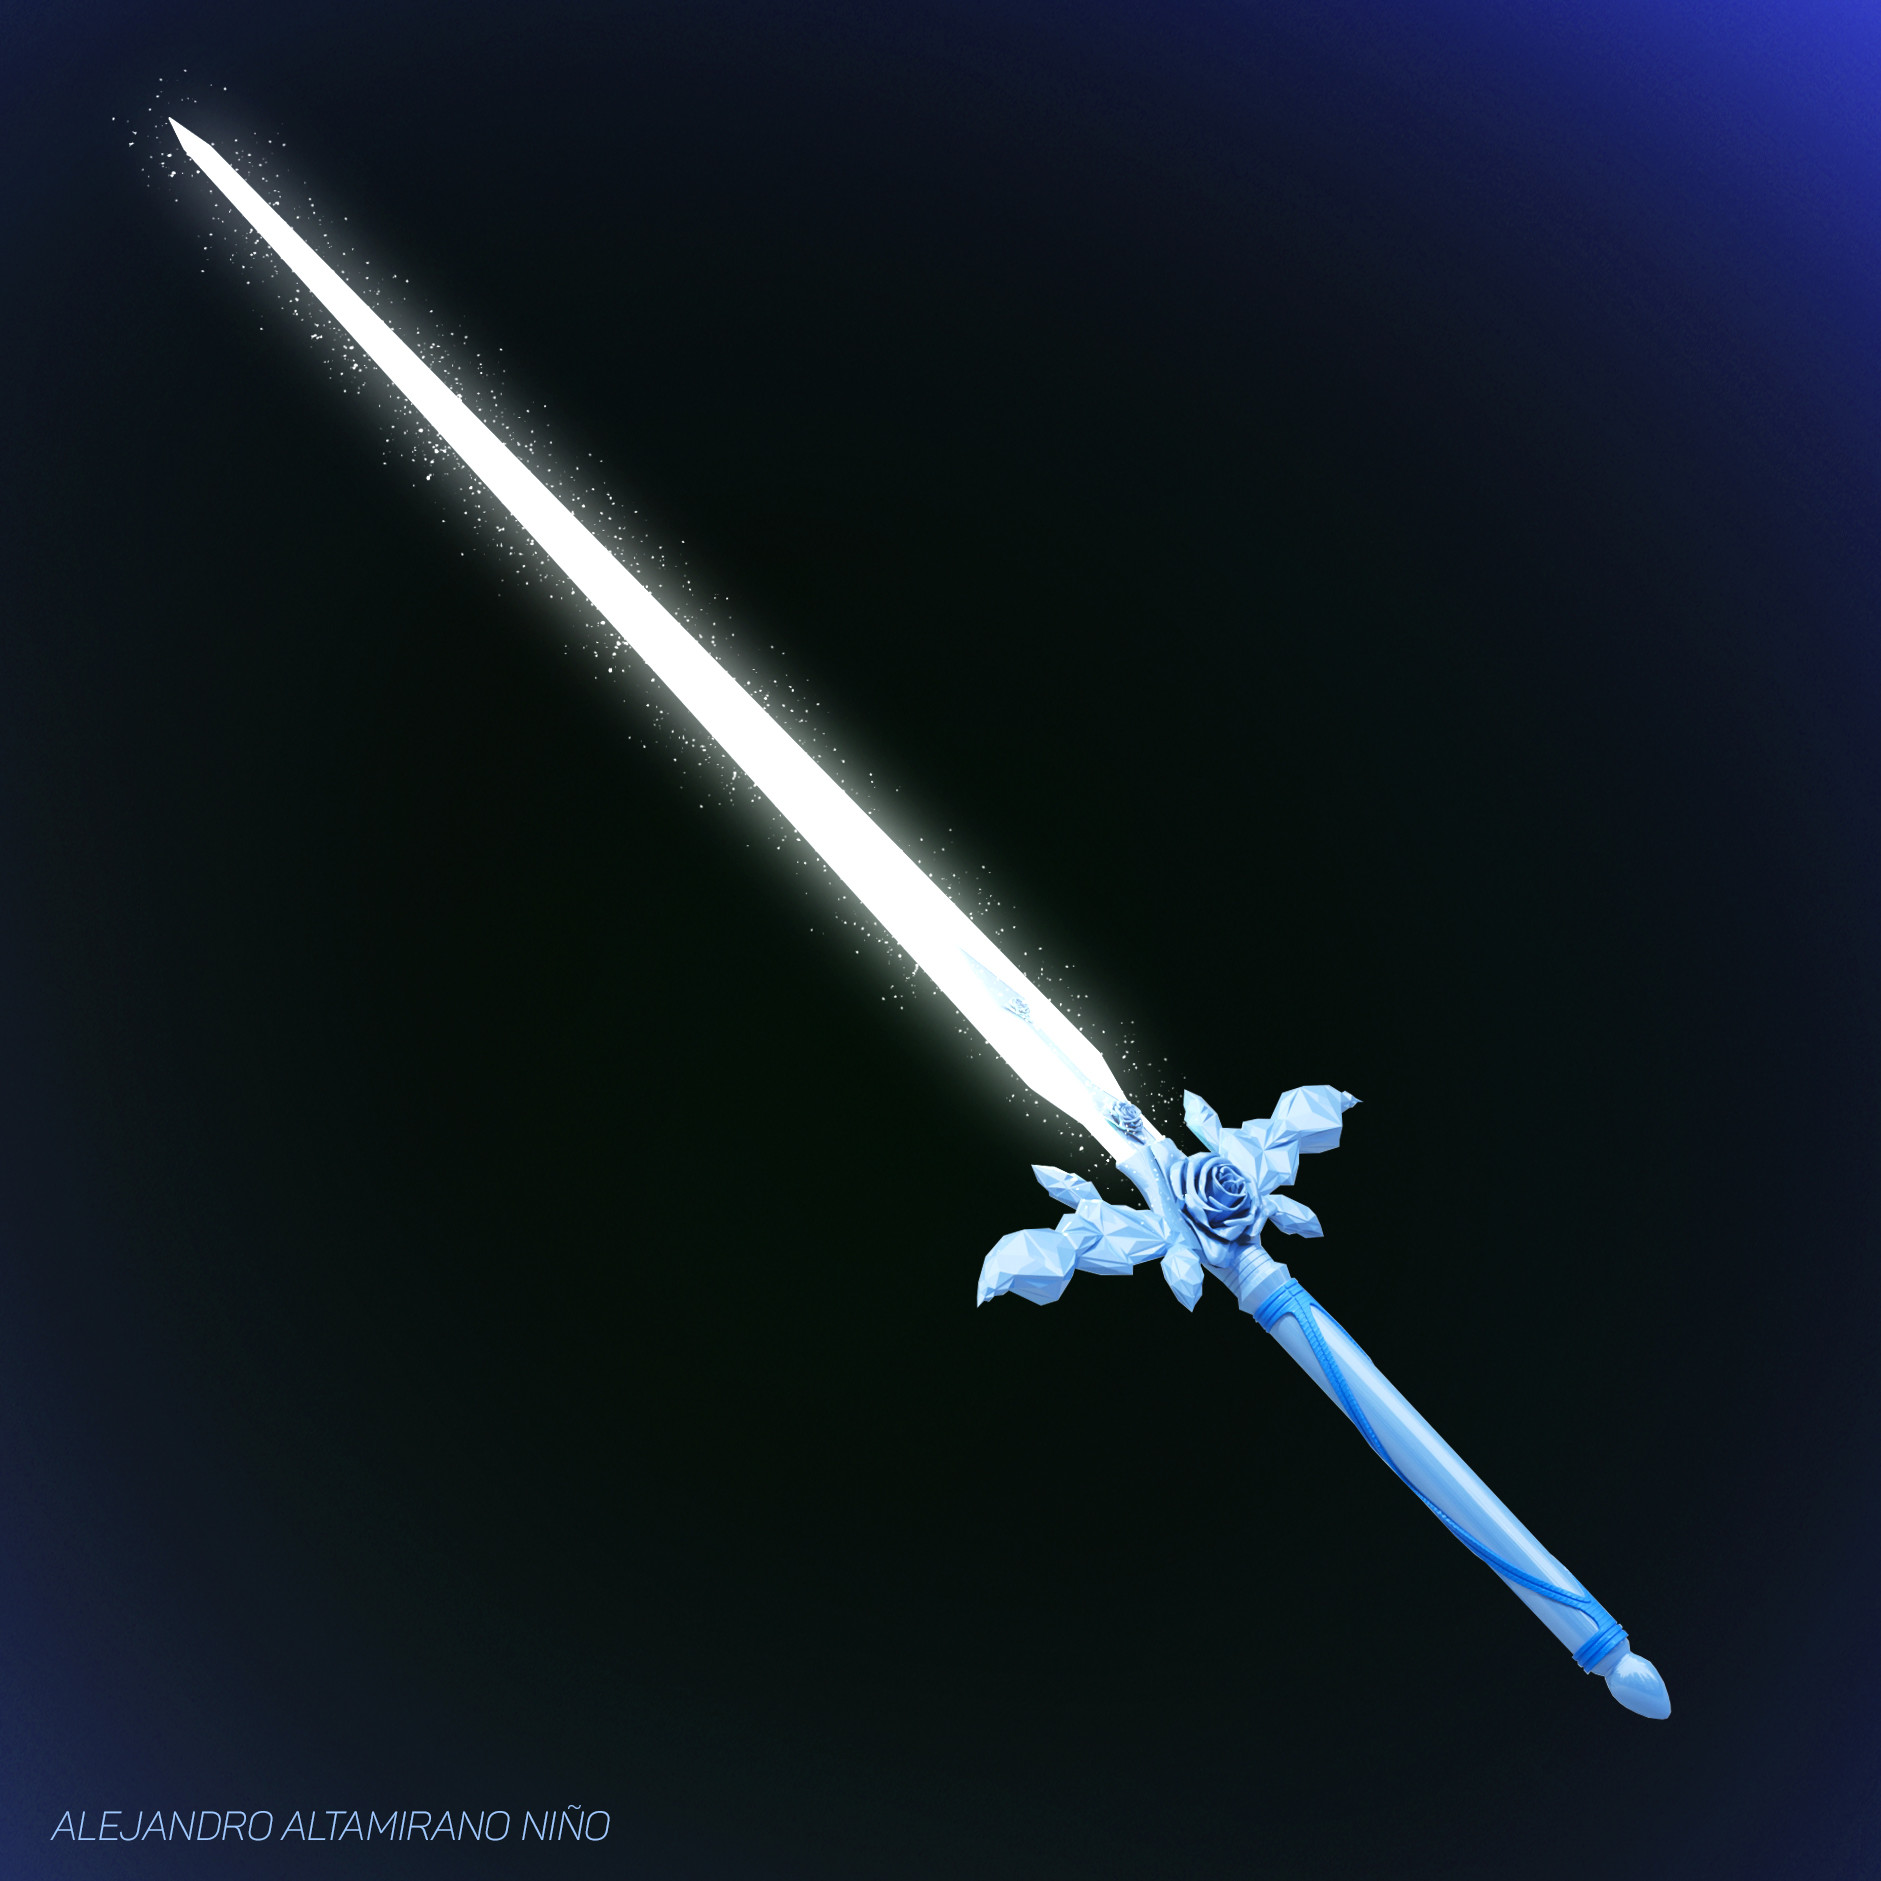 alejandro-altamirano-blue-rose-sword-02.jpg